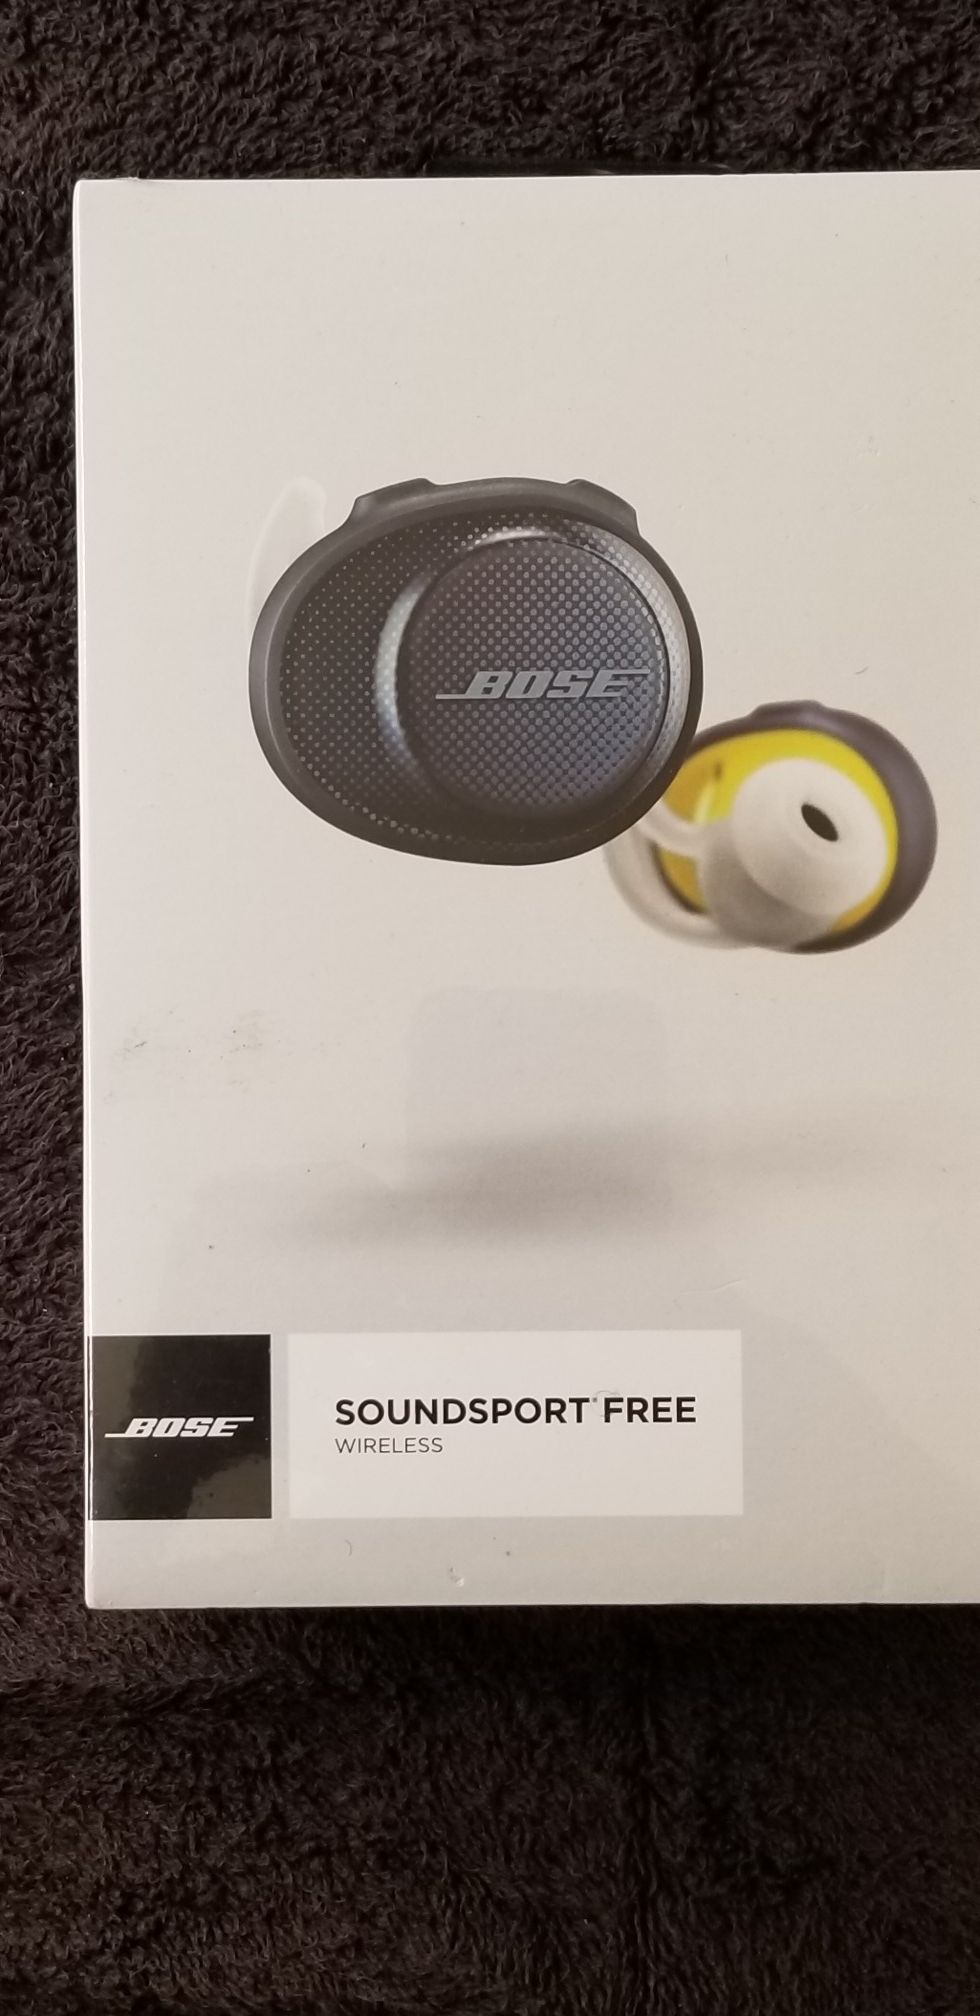 Bose soundsport wireless